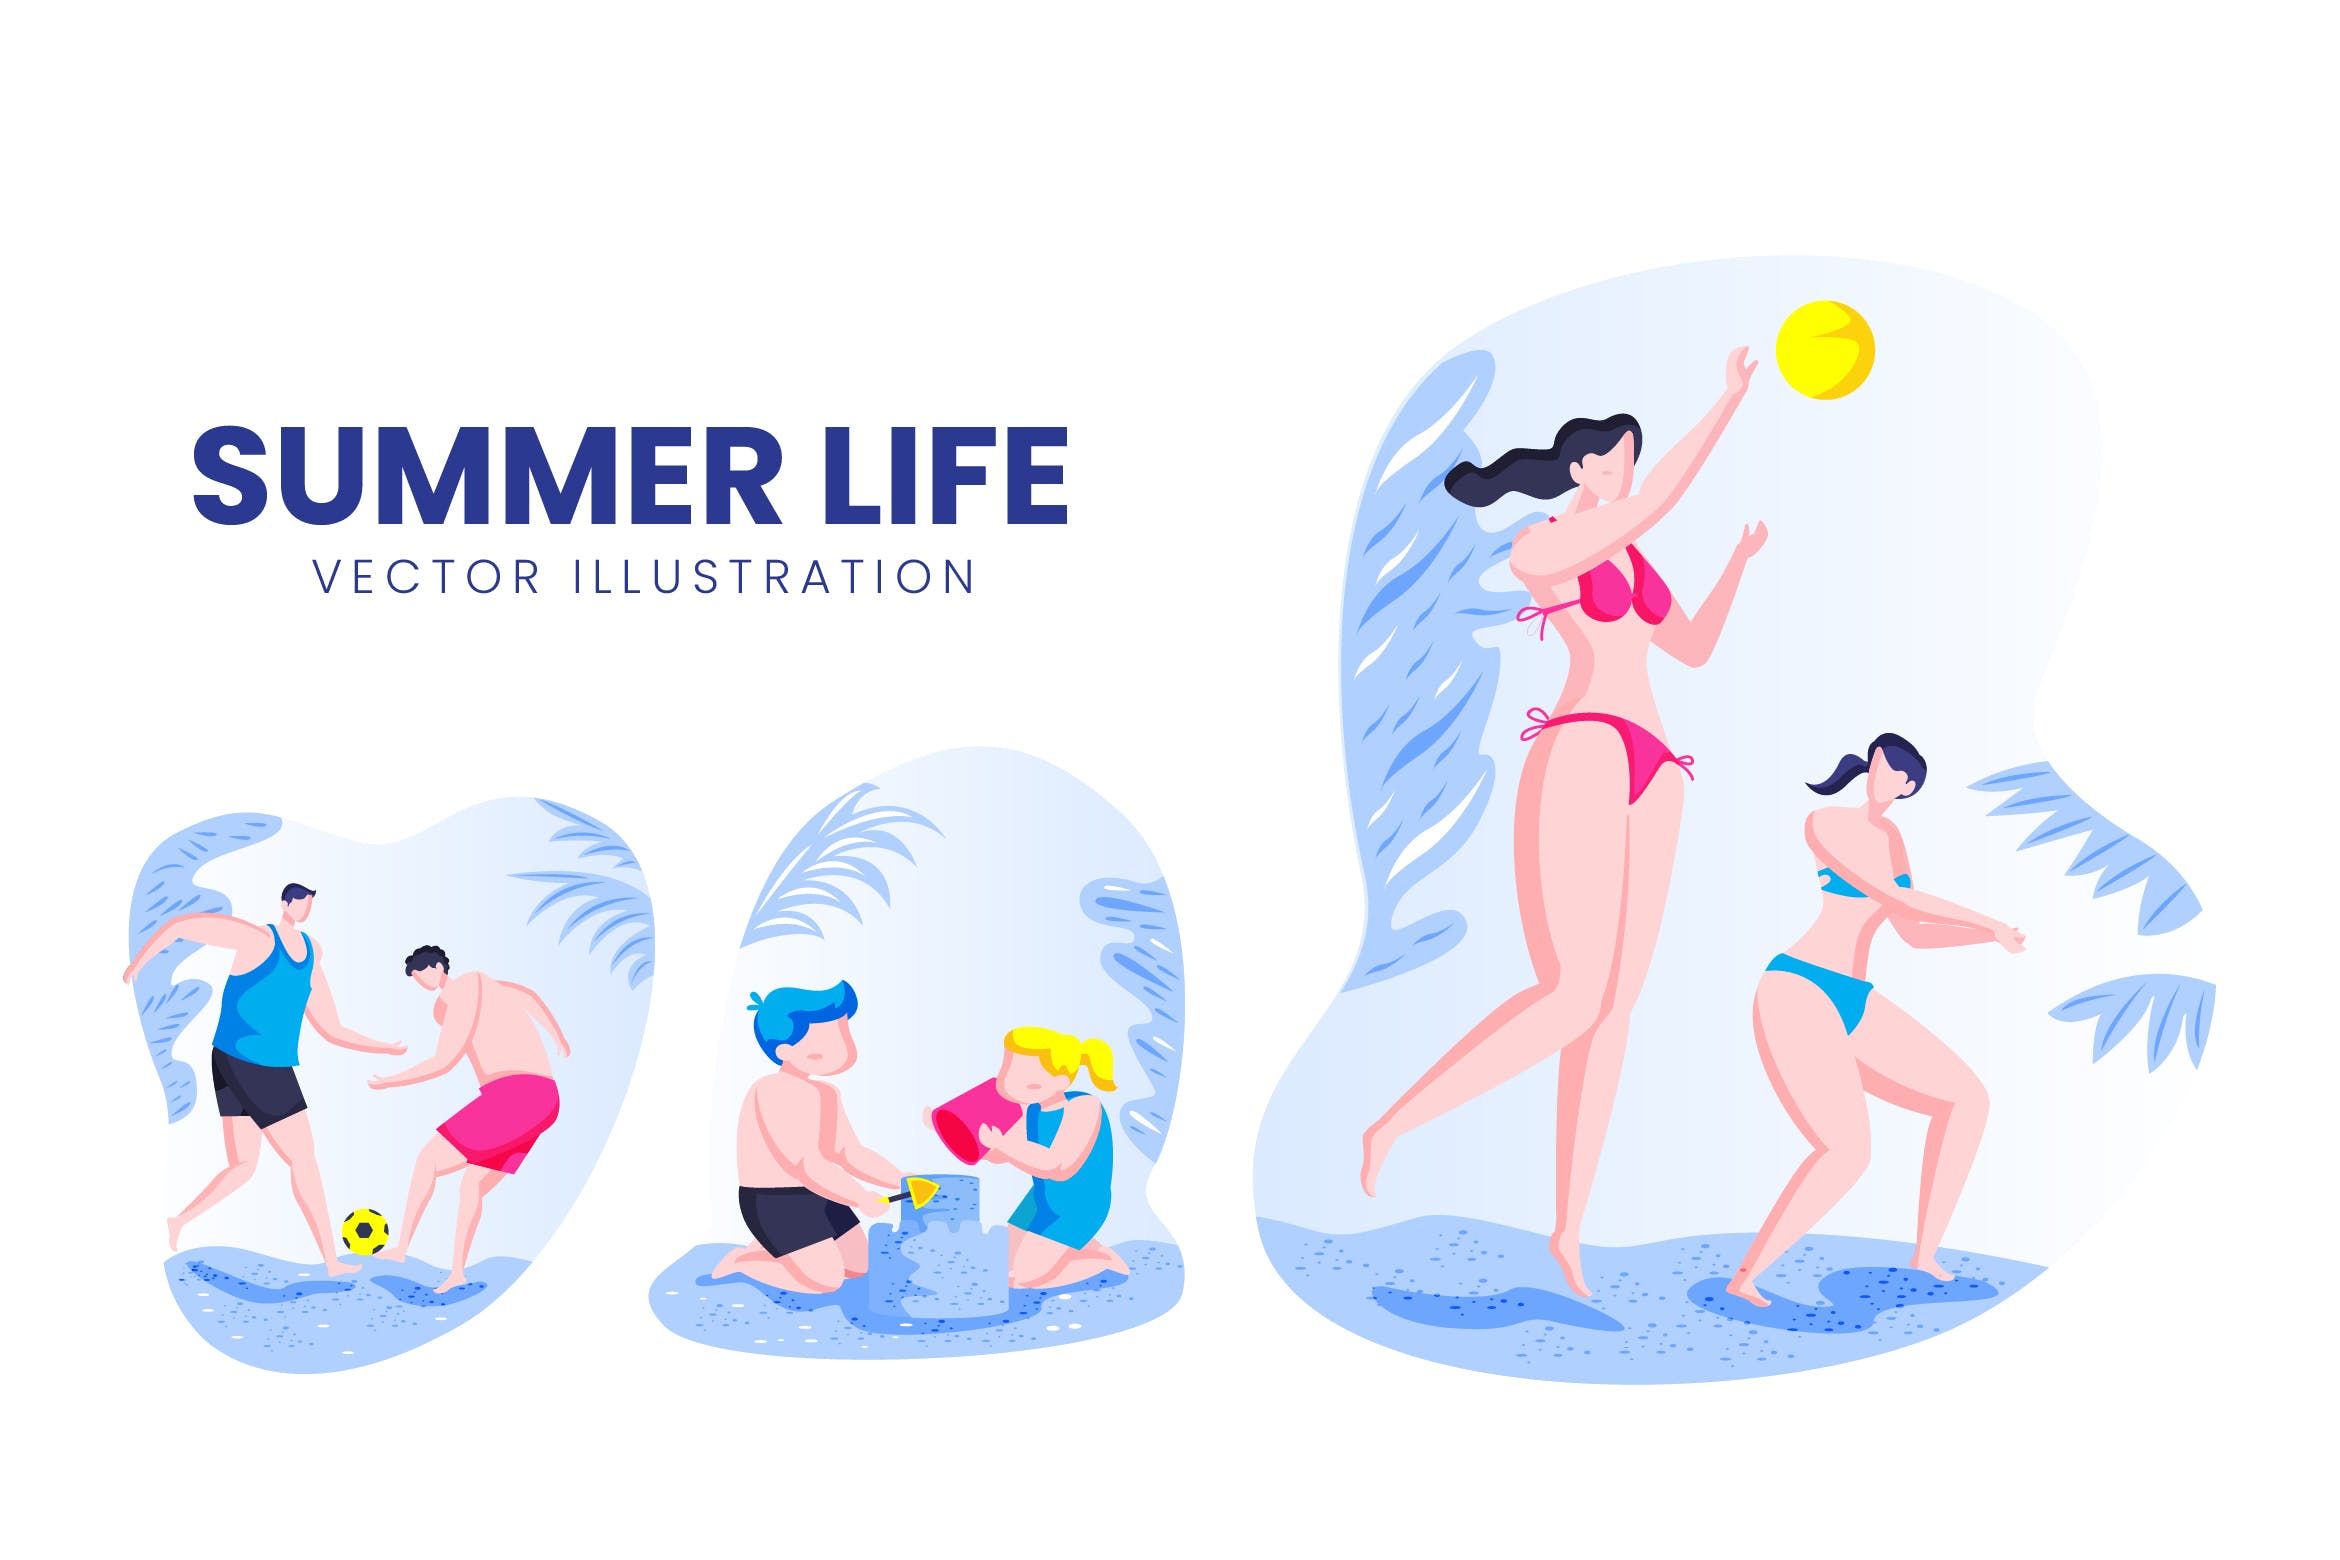 夏季生活人物形象16设计网精选手绘插画矢量素材 Summer Life Activity Vector Character Set插图